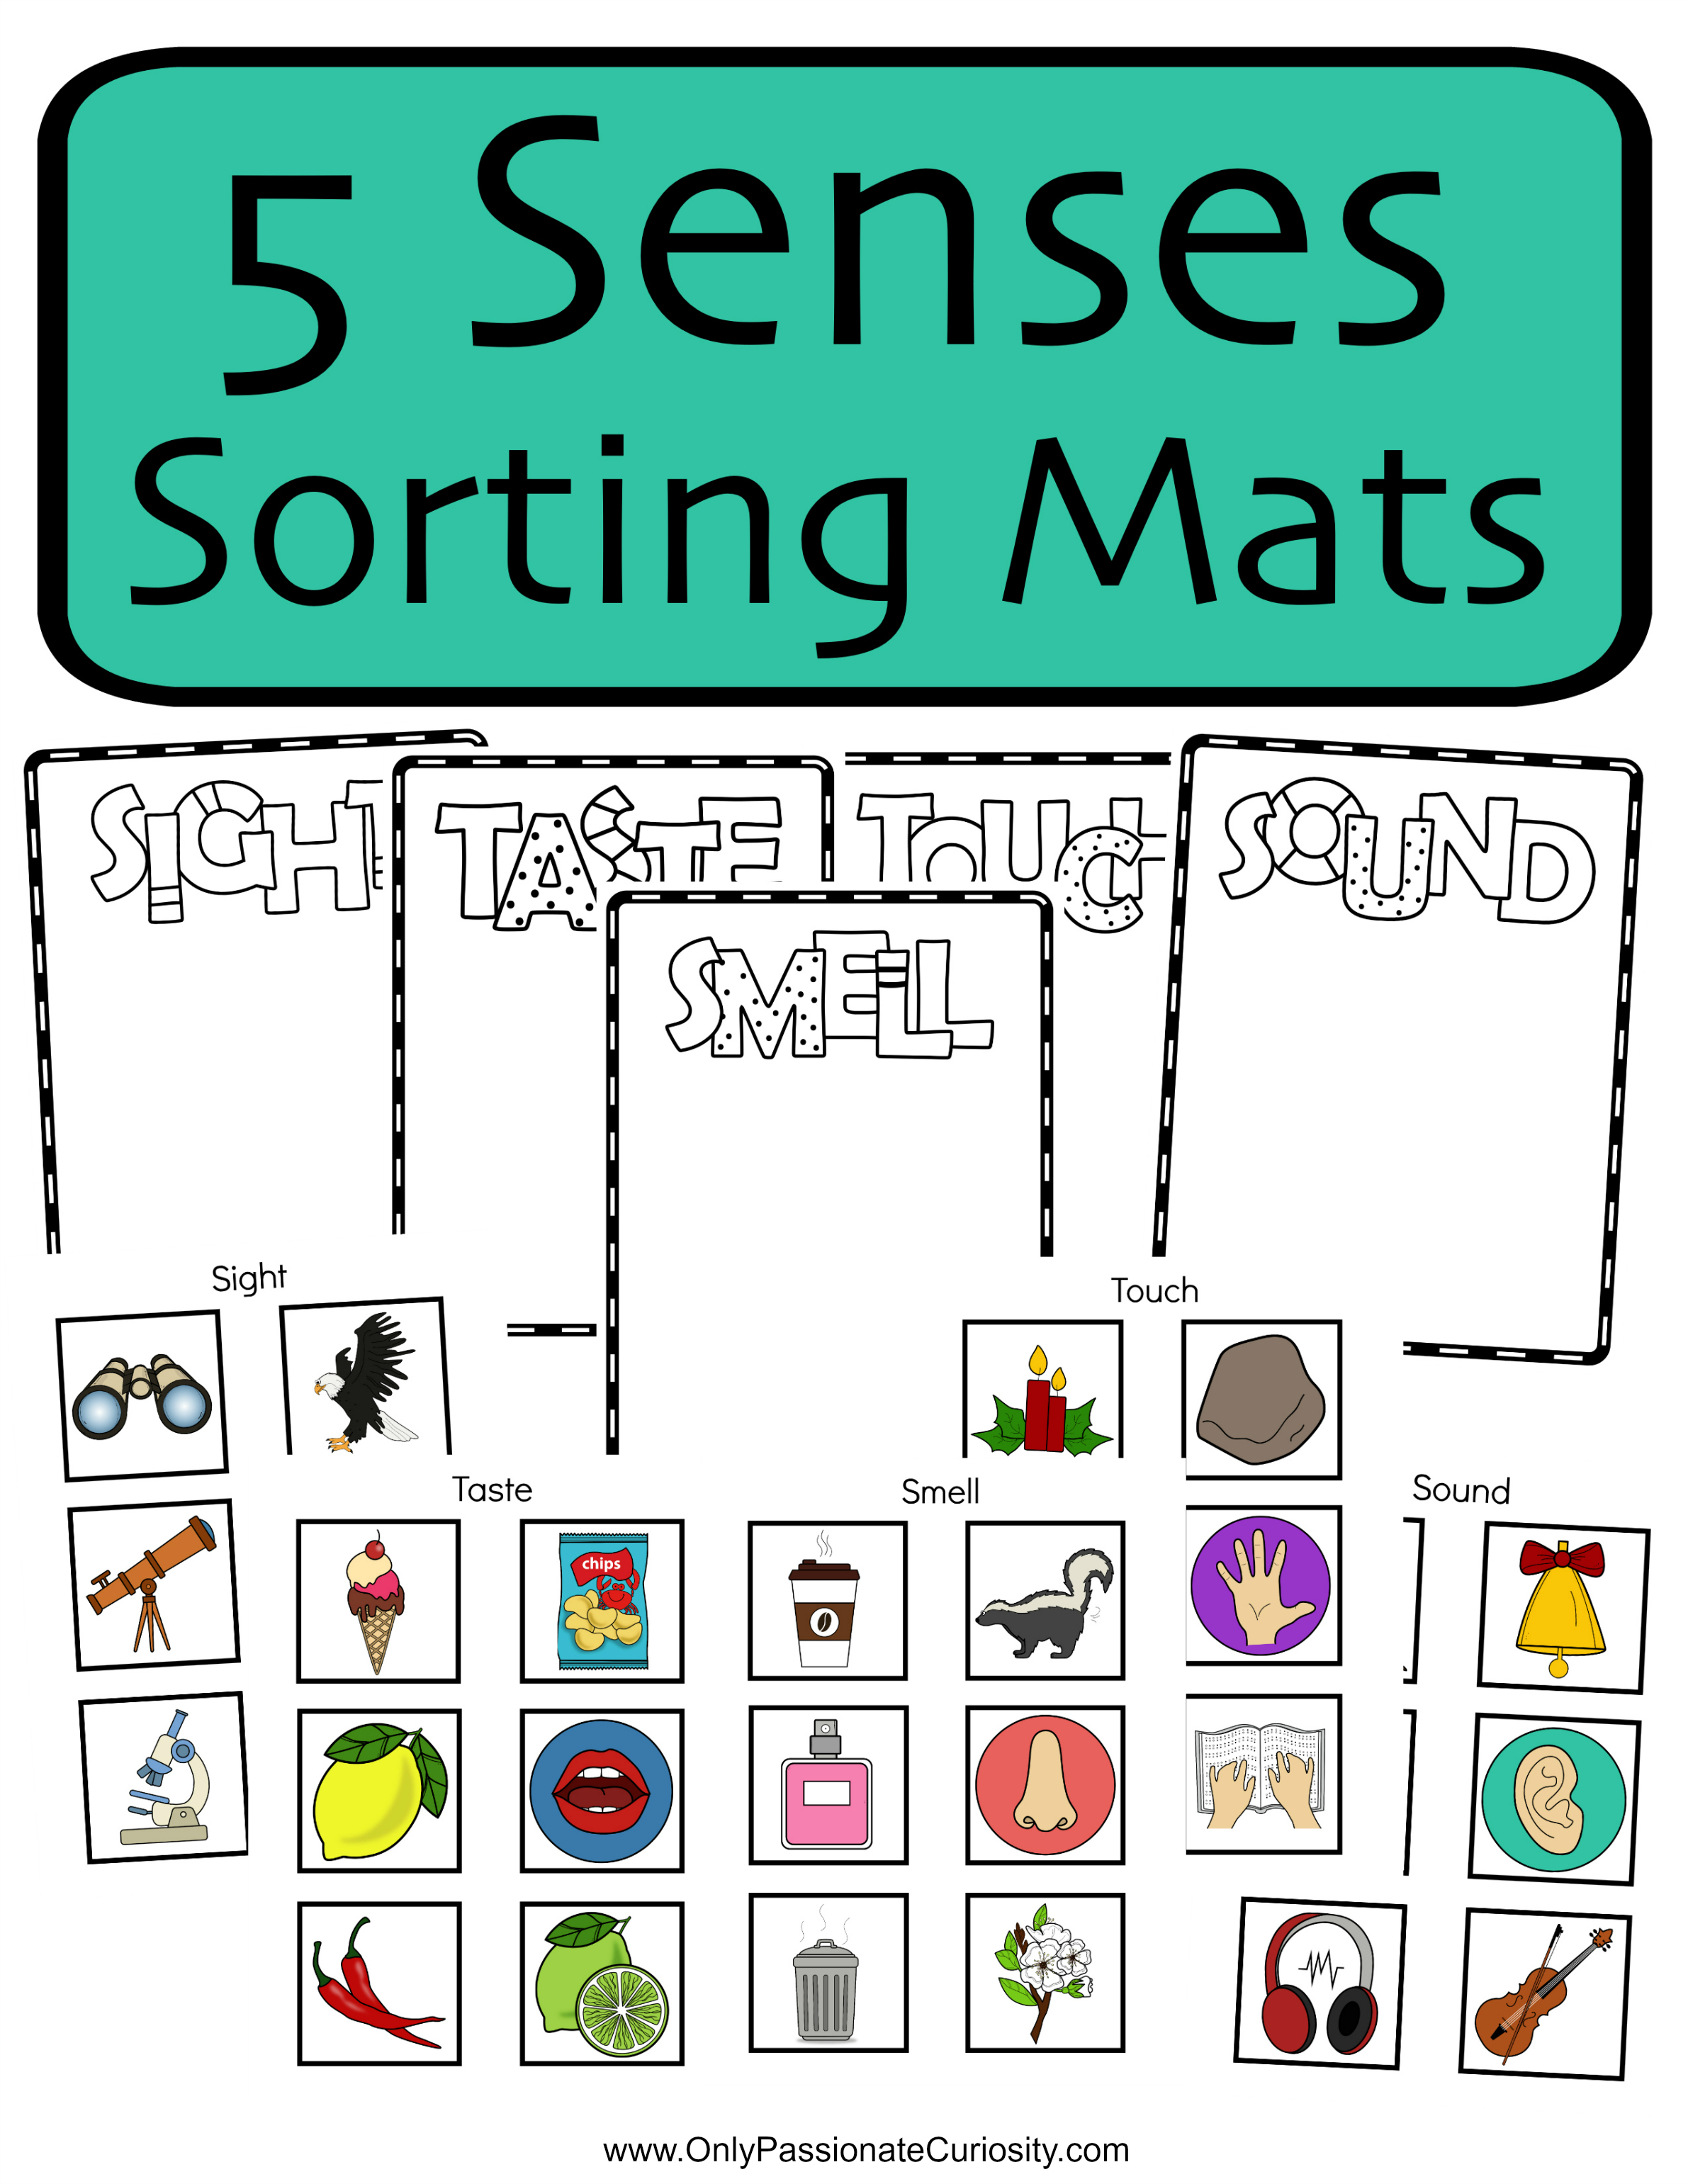 Five Senses Sorting Printable Free